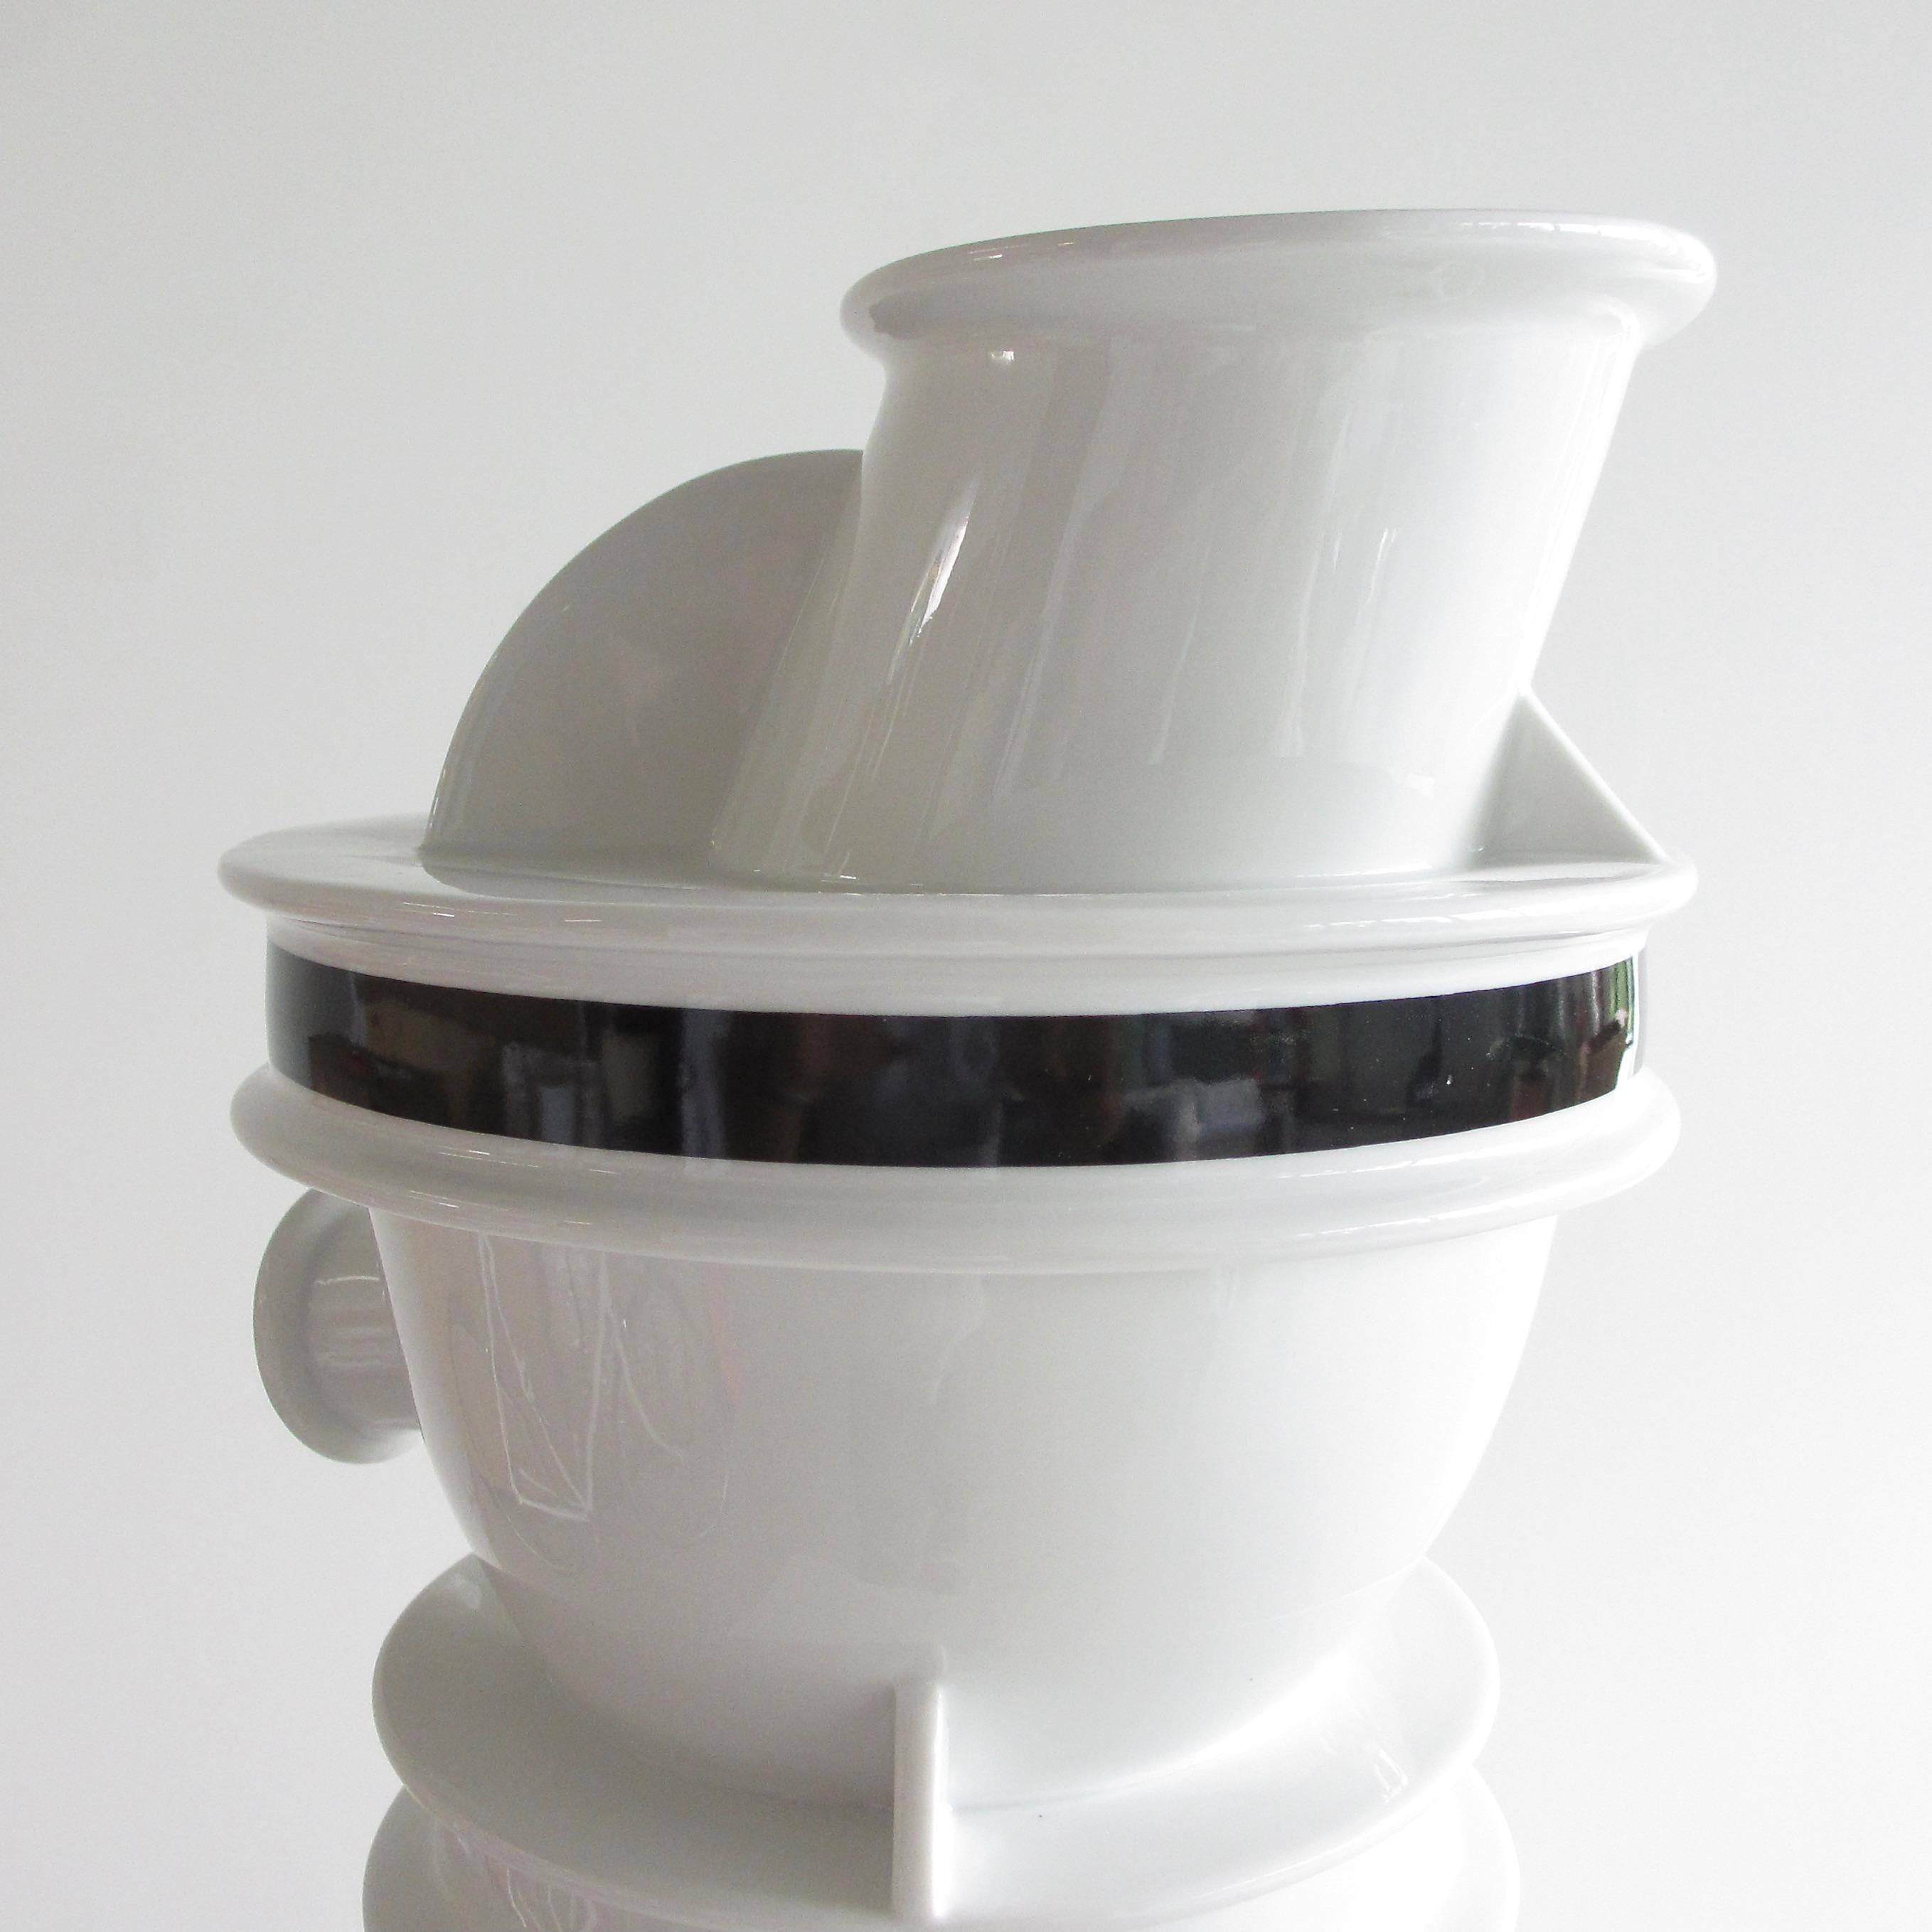 Vase aus Keramik, von Ettore Sottsass, 1983.

Die Euphrat-Vase, hergestellt aus keramischem Porzellan. Er gehört zur Serie Rivers, die von Sottsass 1981-1988 entworfen wurde.

Darunter gestempelt.

Ettore Sottsass (14. September 1917 - 31.